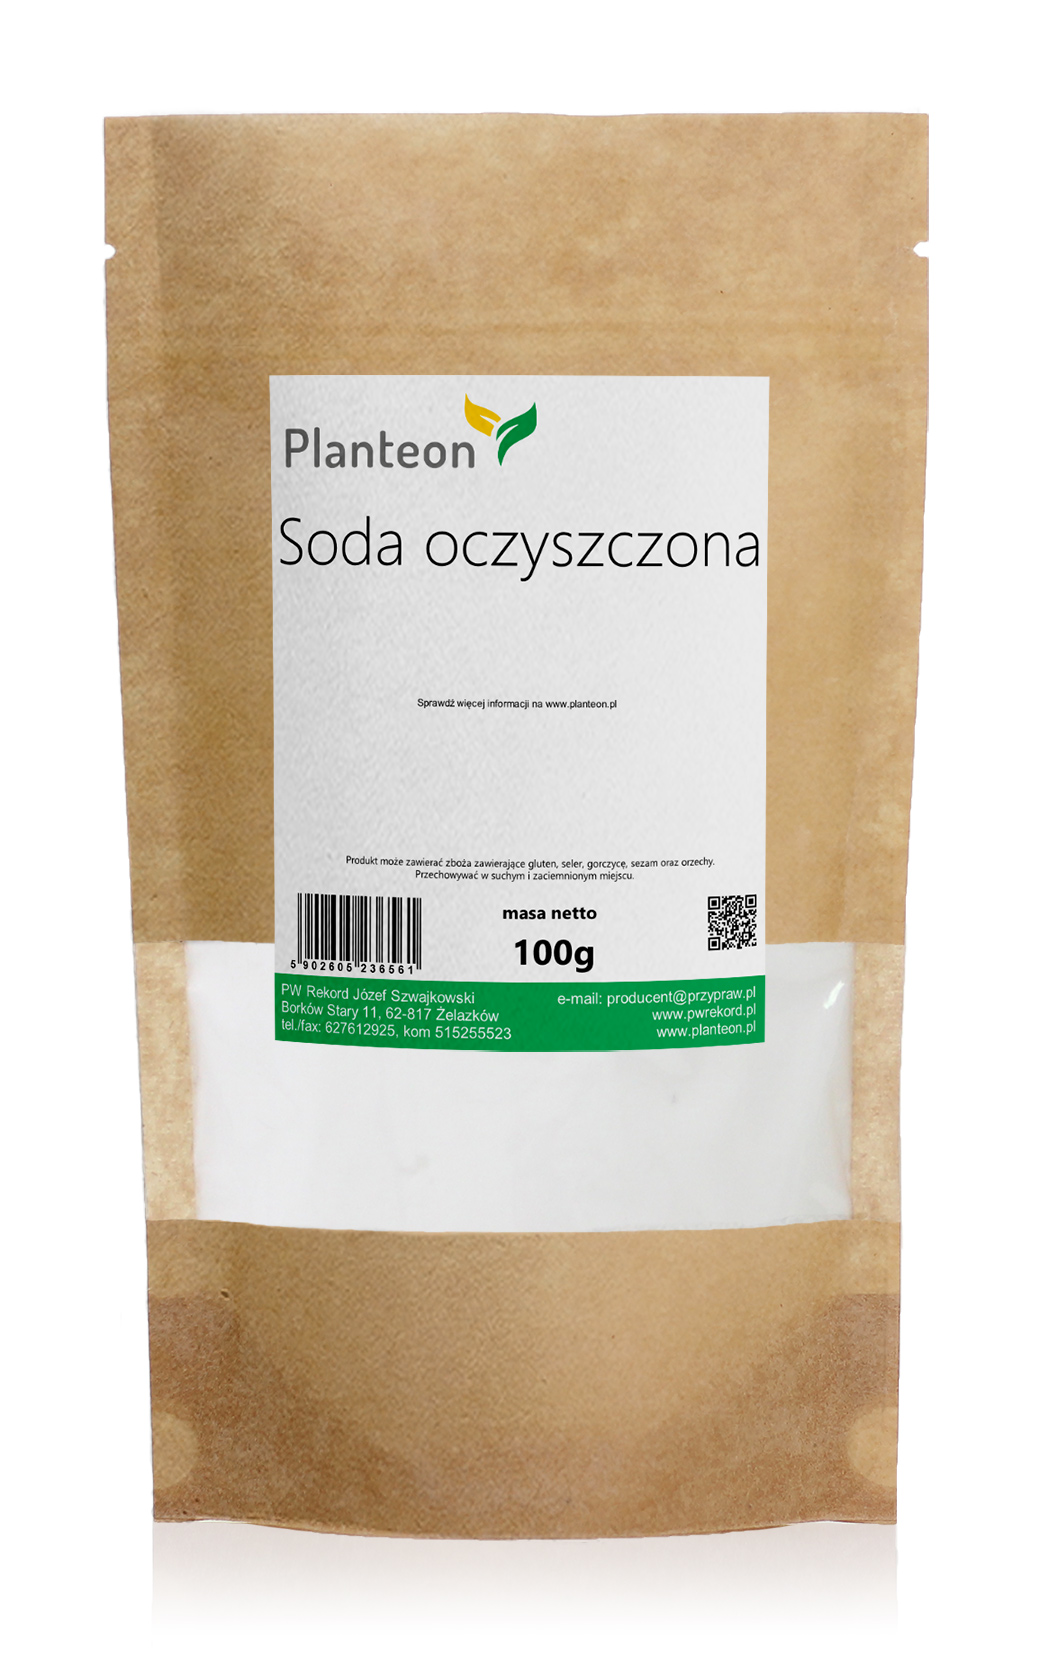 Planteon Soda oczyszczona 100g 2-0114-01-2